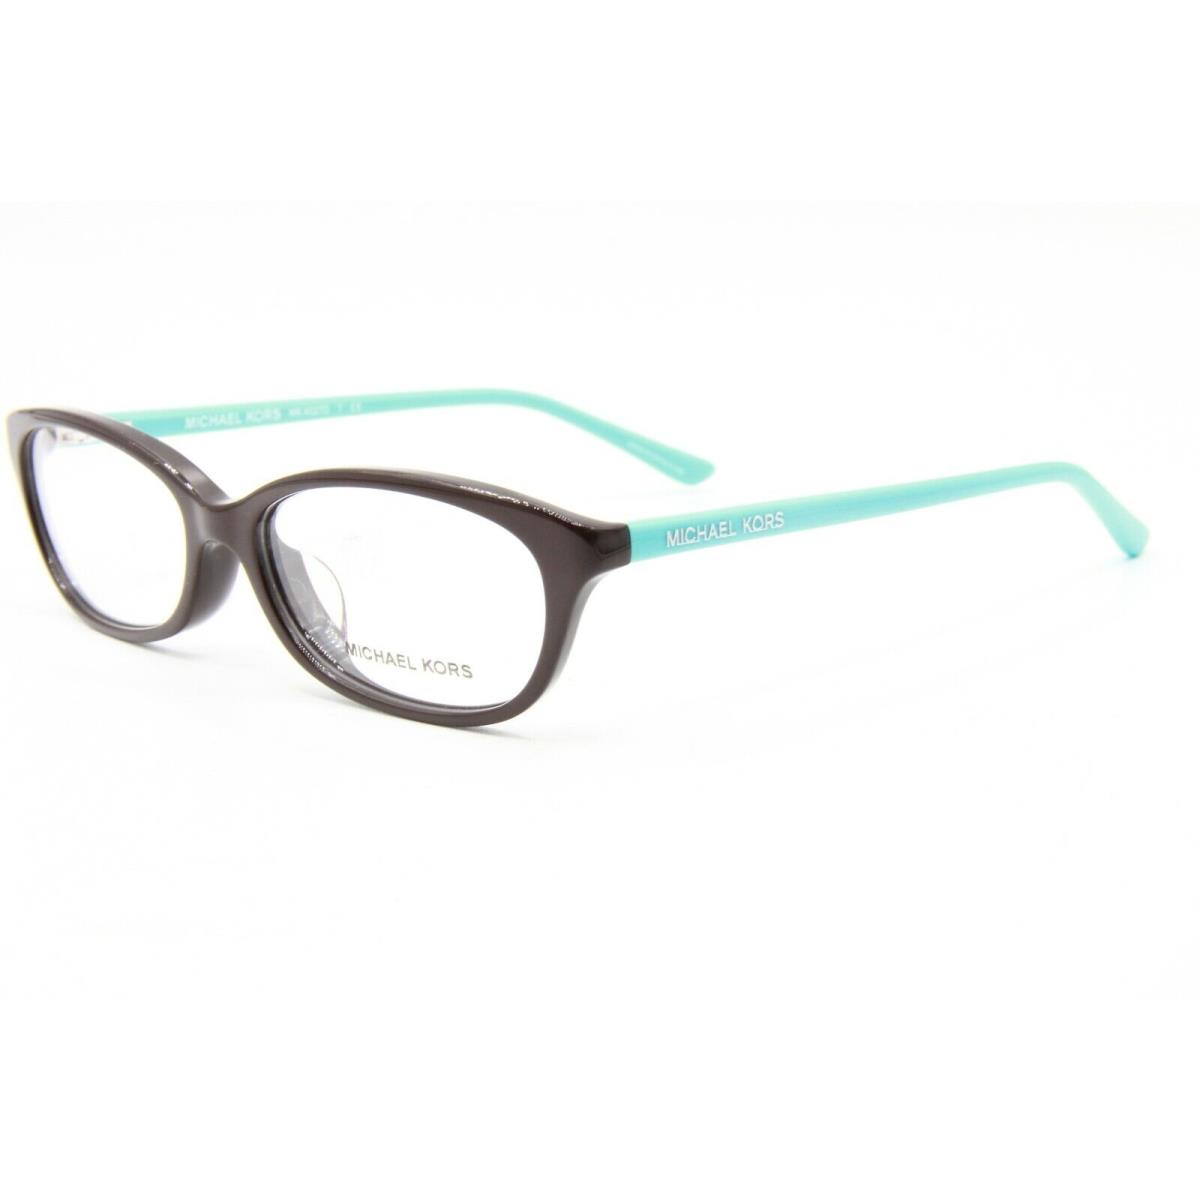 Michael Kors MK 4027D 3136 Brown Eyeglasses Frame MK4027D 54-16